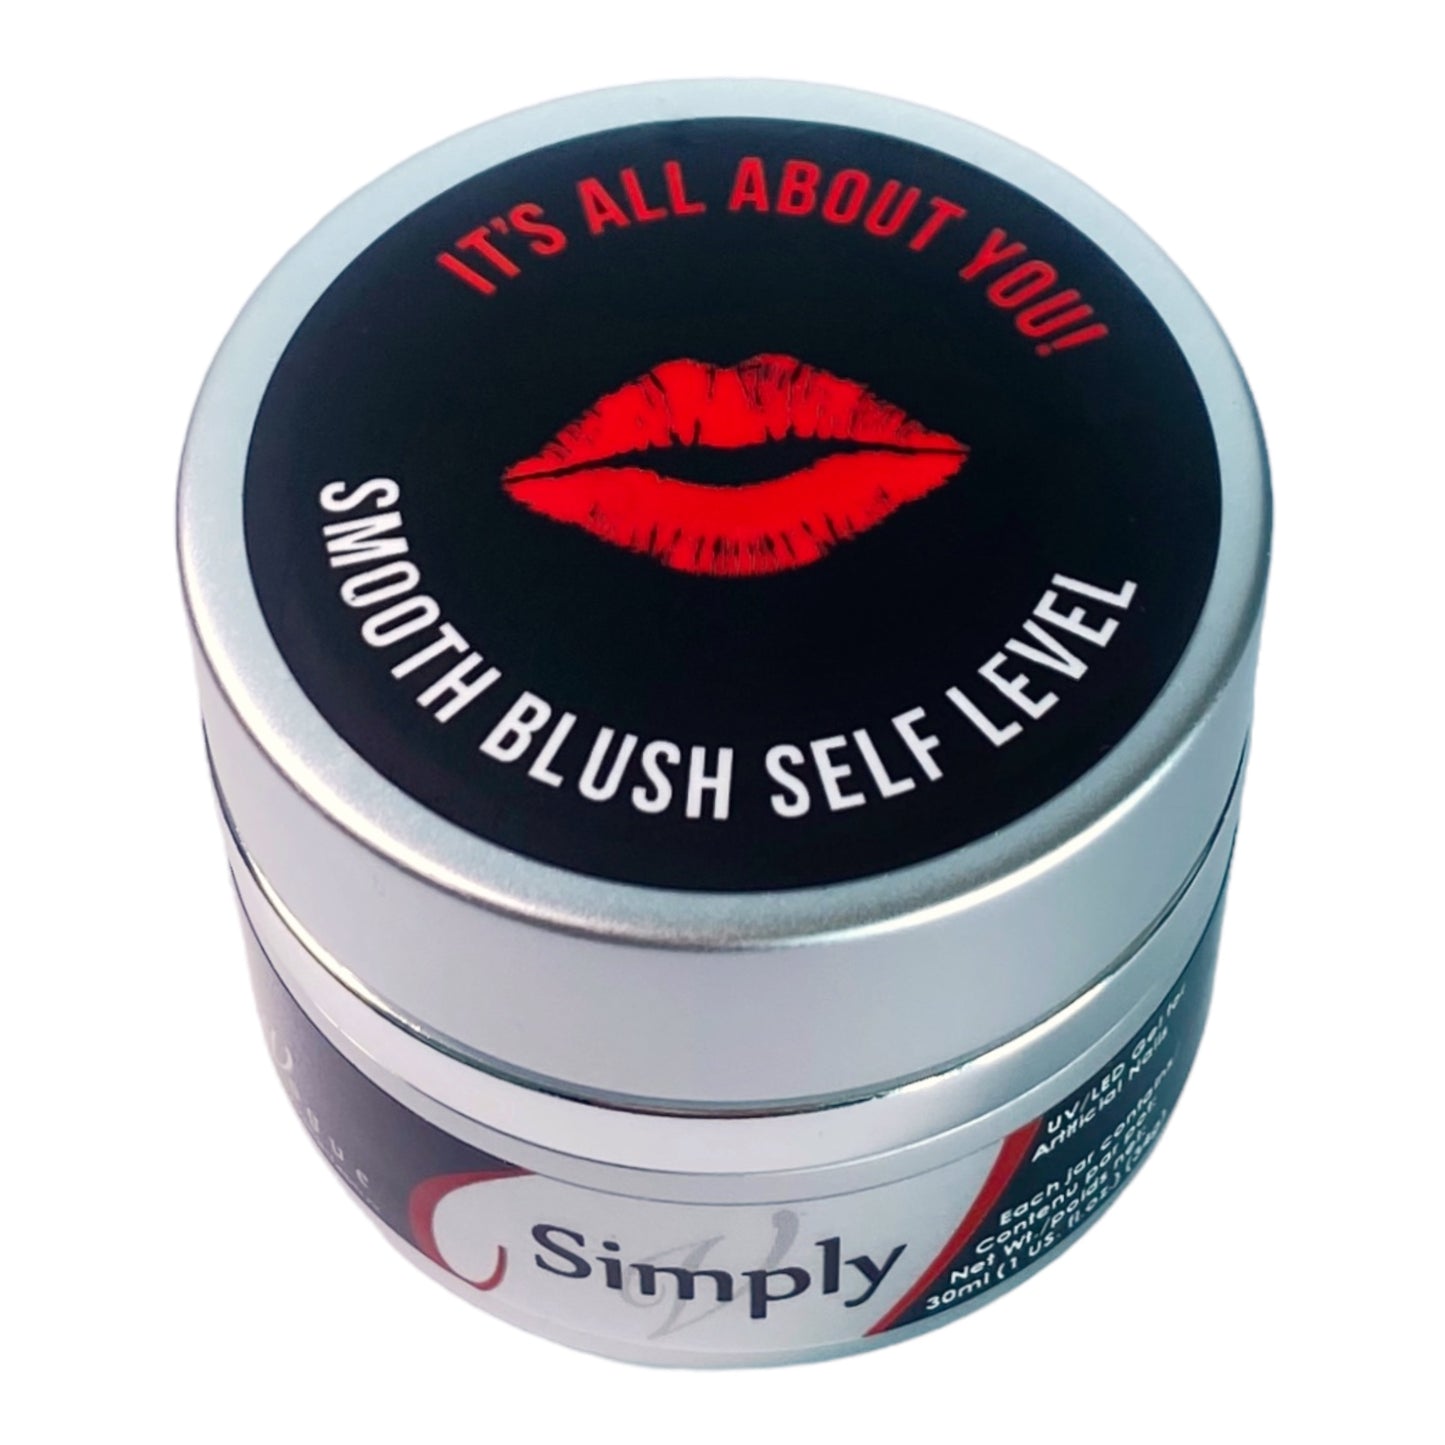  Simply Smooth Blush Self Level Gel de la marque En Vogue. En Un gel dur auto-nivelant à faible viscosité avec adhérence (Connect) intégrée.